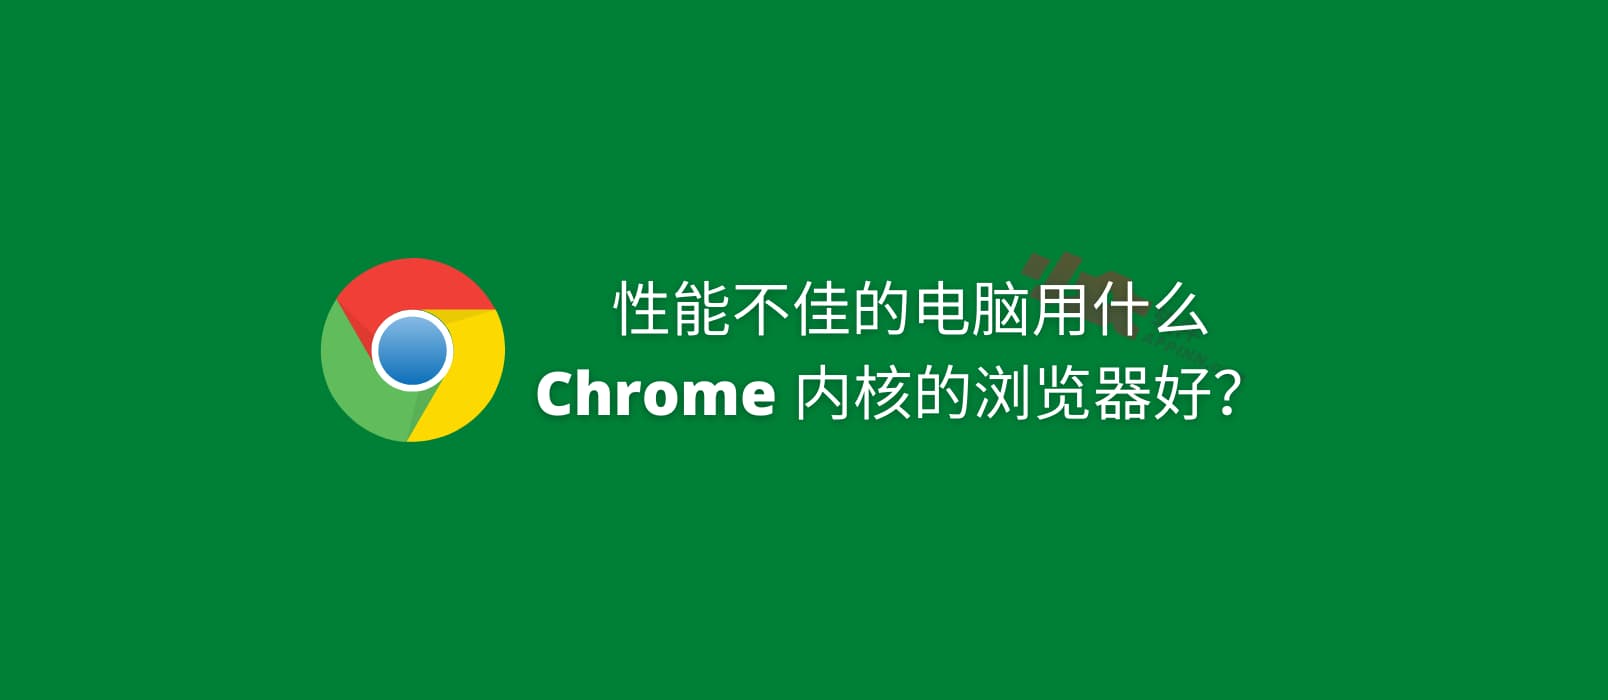 性能不佳的老电脑，用什么 Chrome 内核的浏览器好？ 